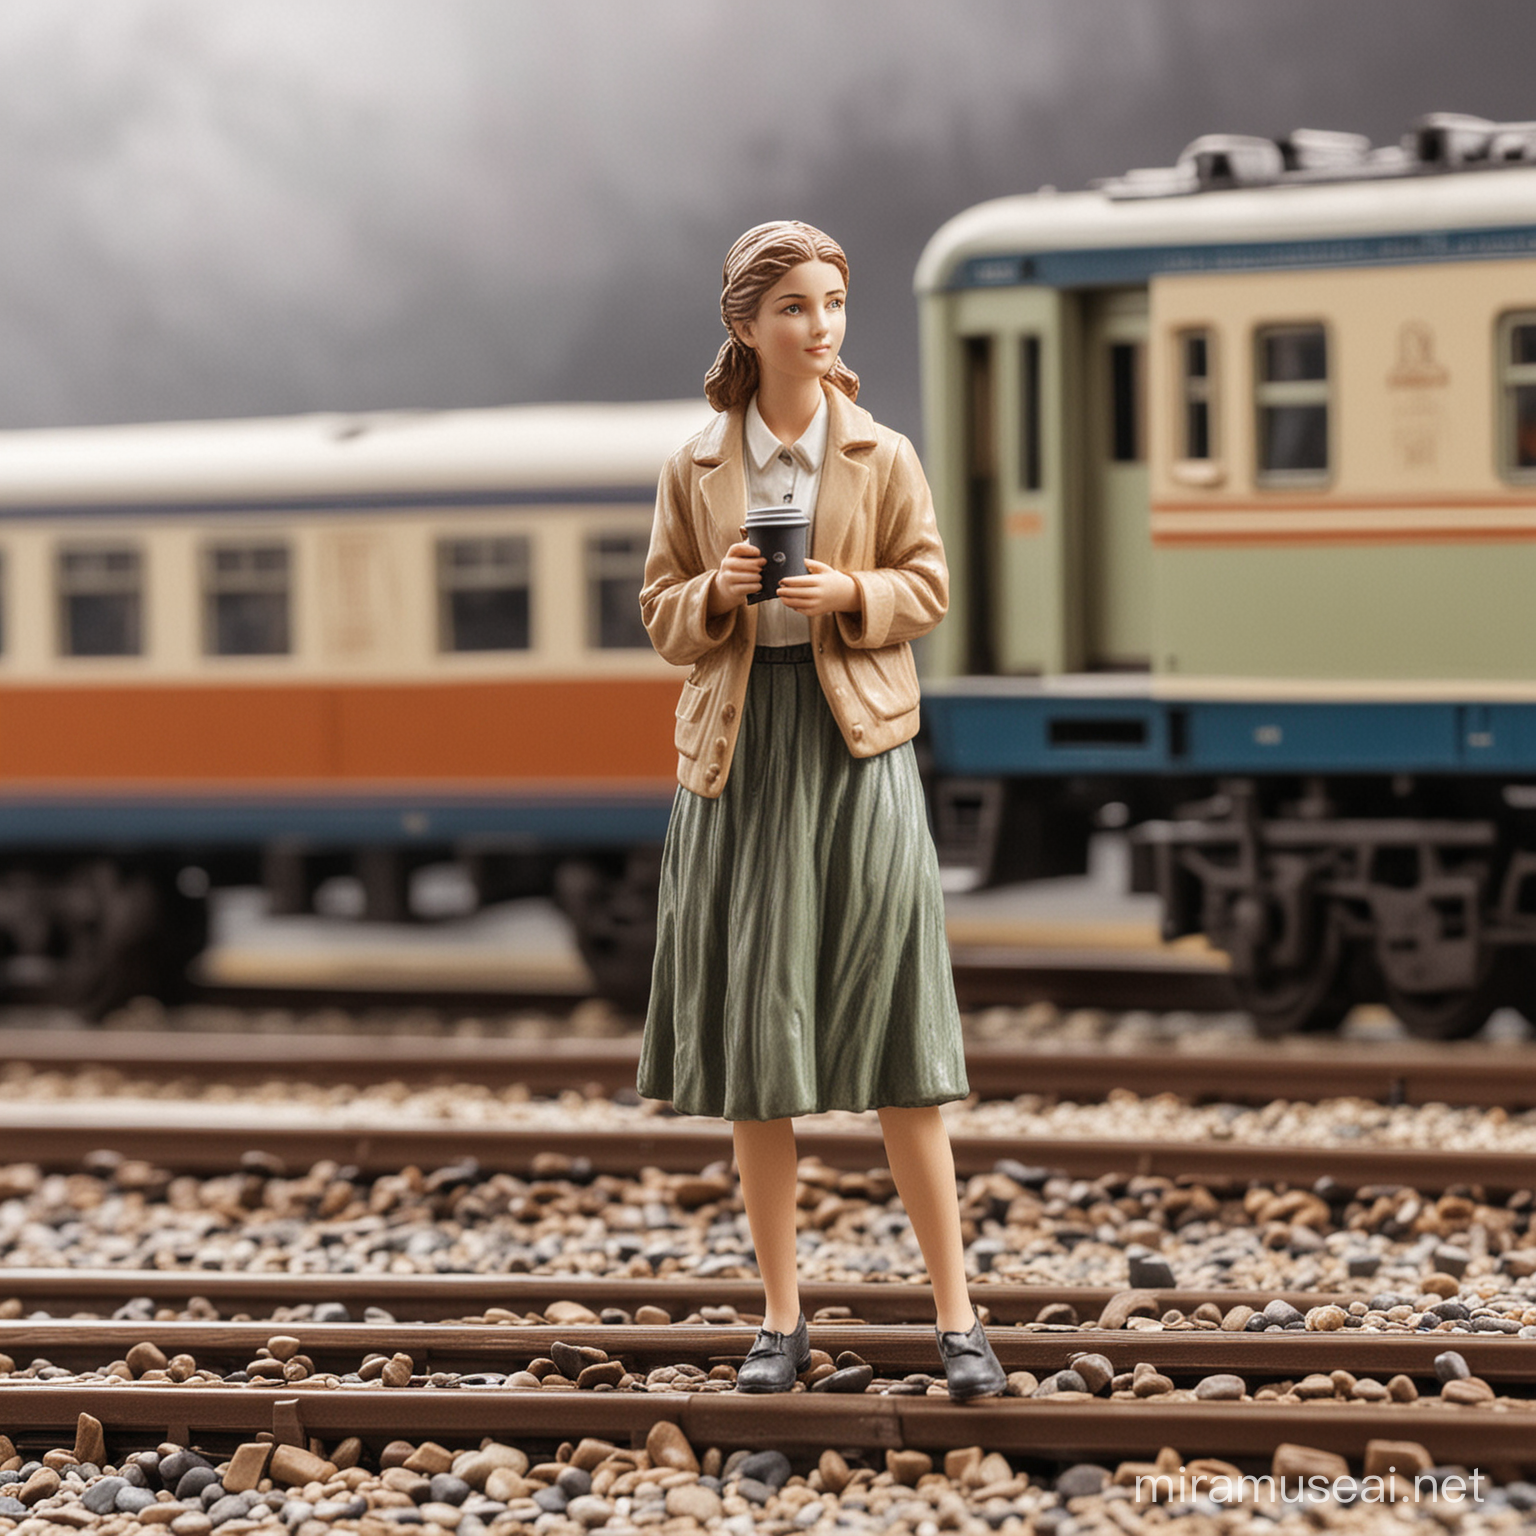 Young Woman Enjoying Coffee by Train